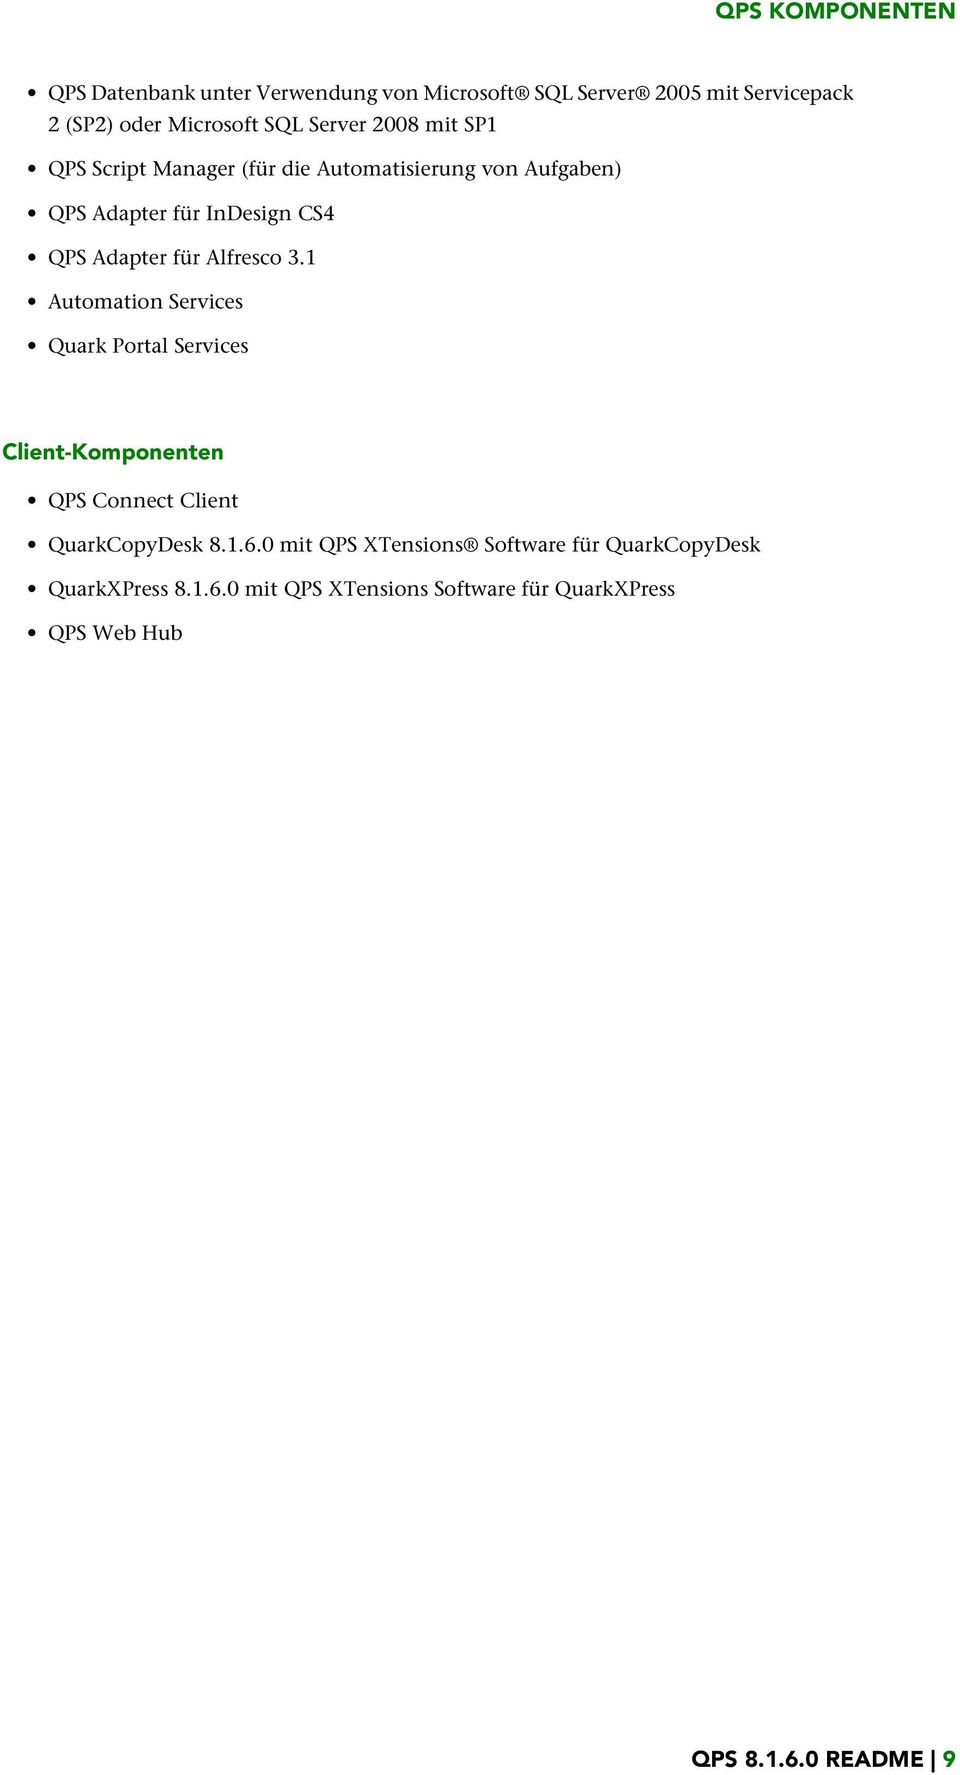 Alfresco 3.1 Automation Services Quark Portal Services Client-Komponenten QPS Connect Client QuarkCopyDesk 8.1.6.